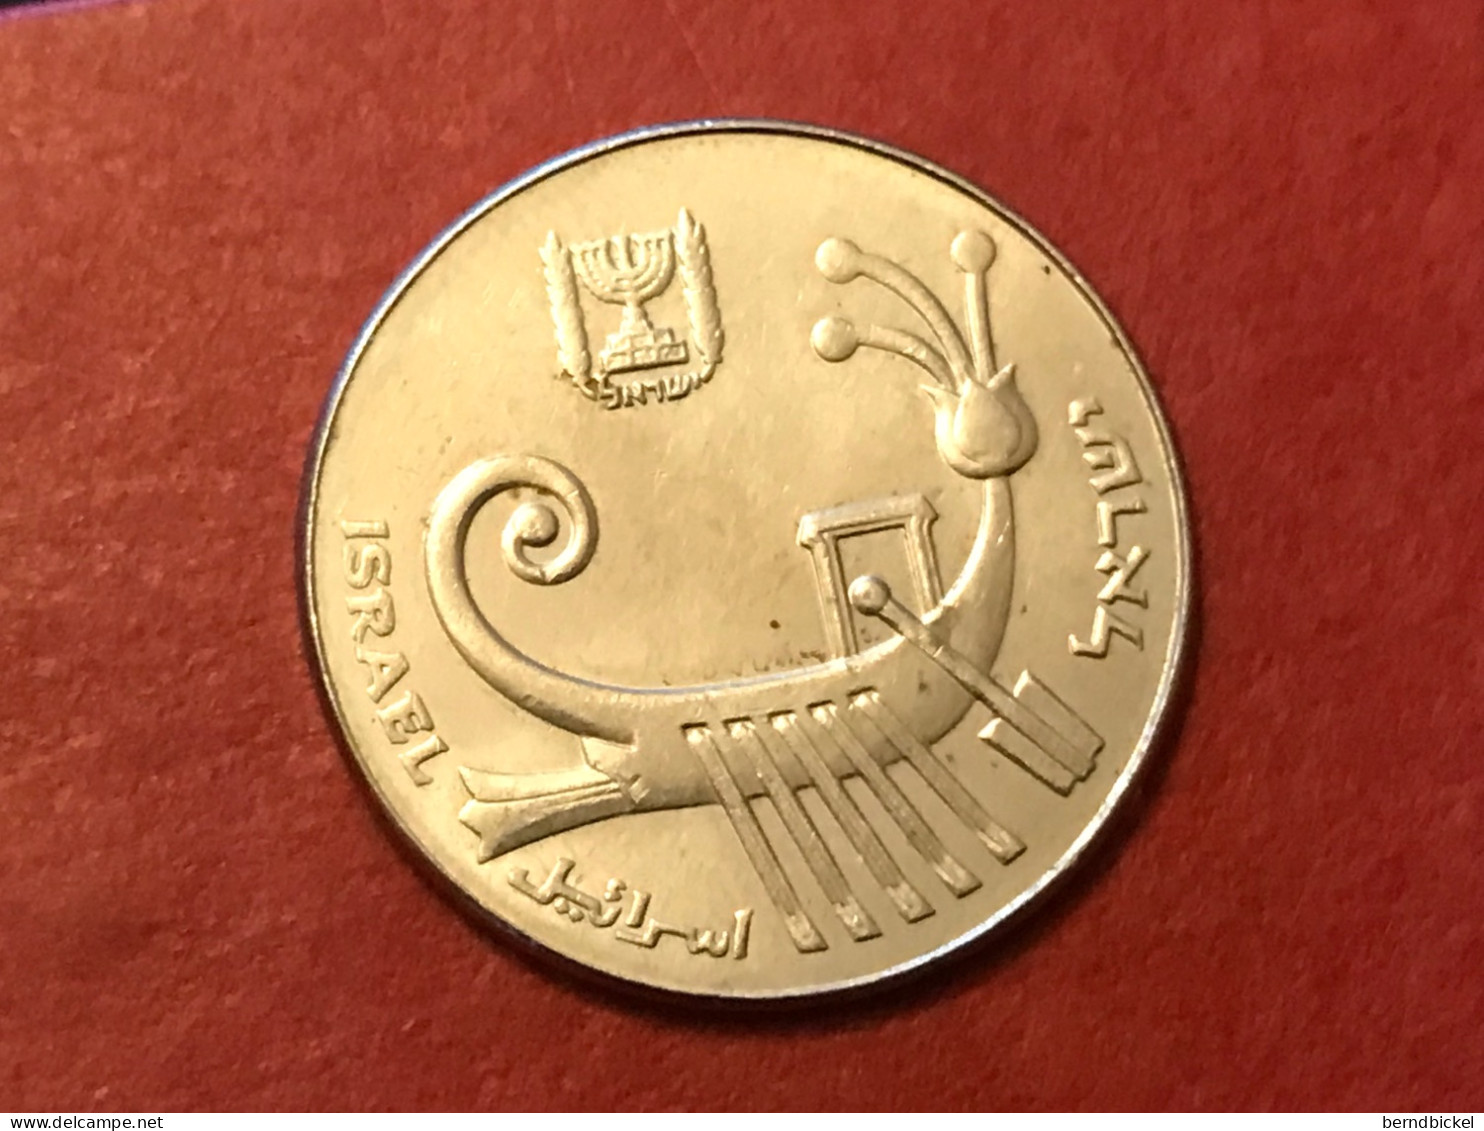 Münze Münzen Umlaufmünze Israel 10 Schekel 1984 - Israel